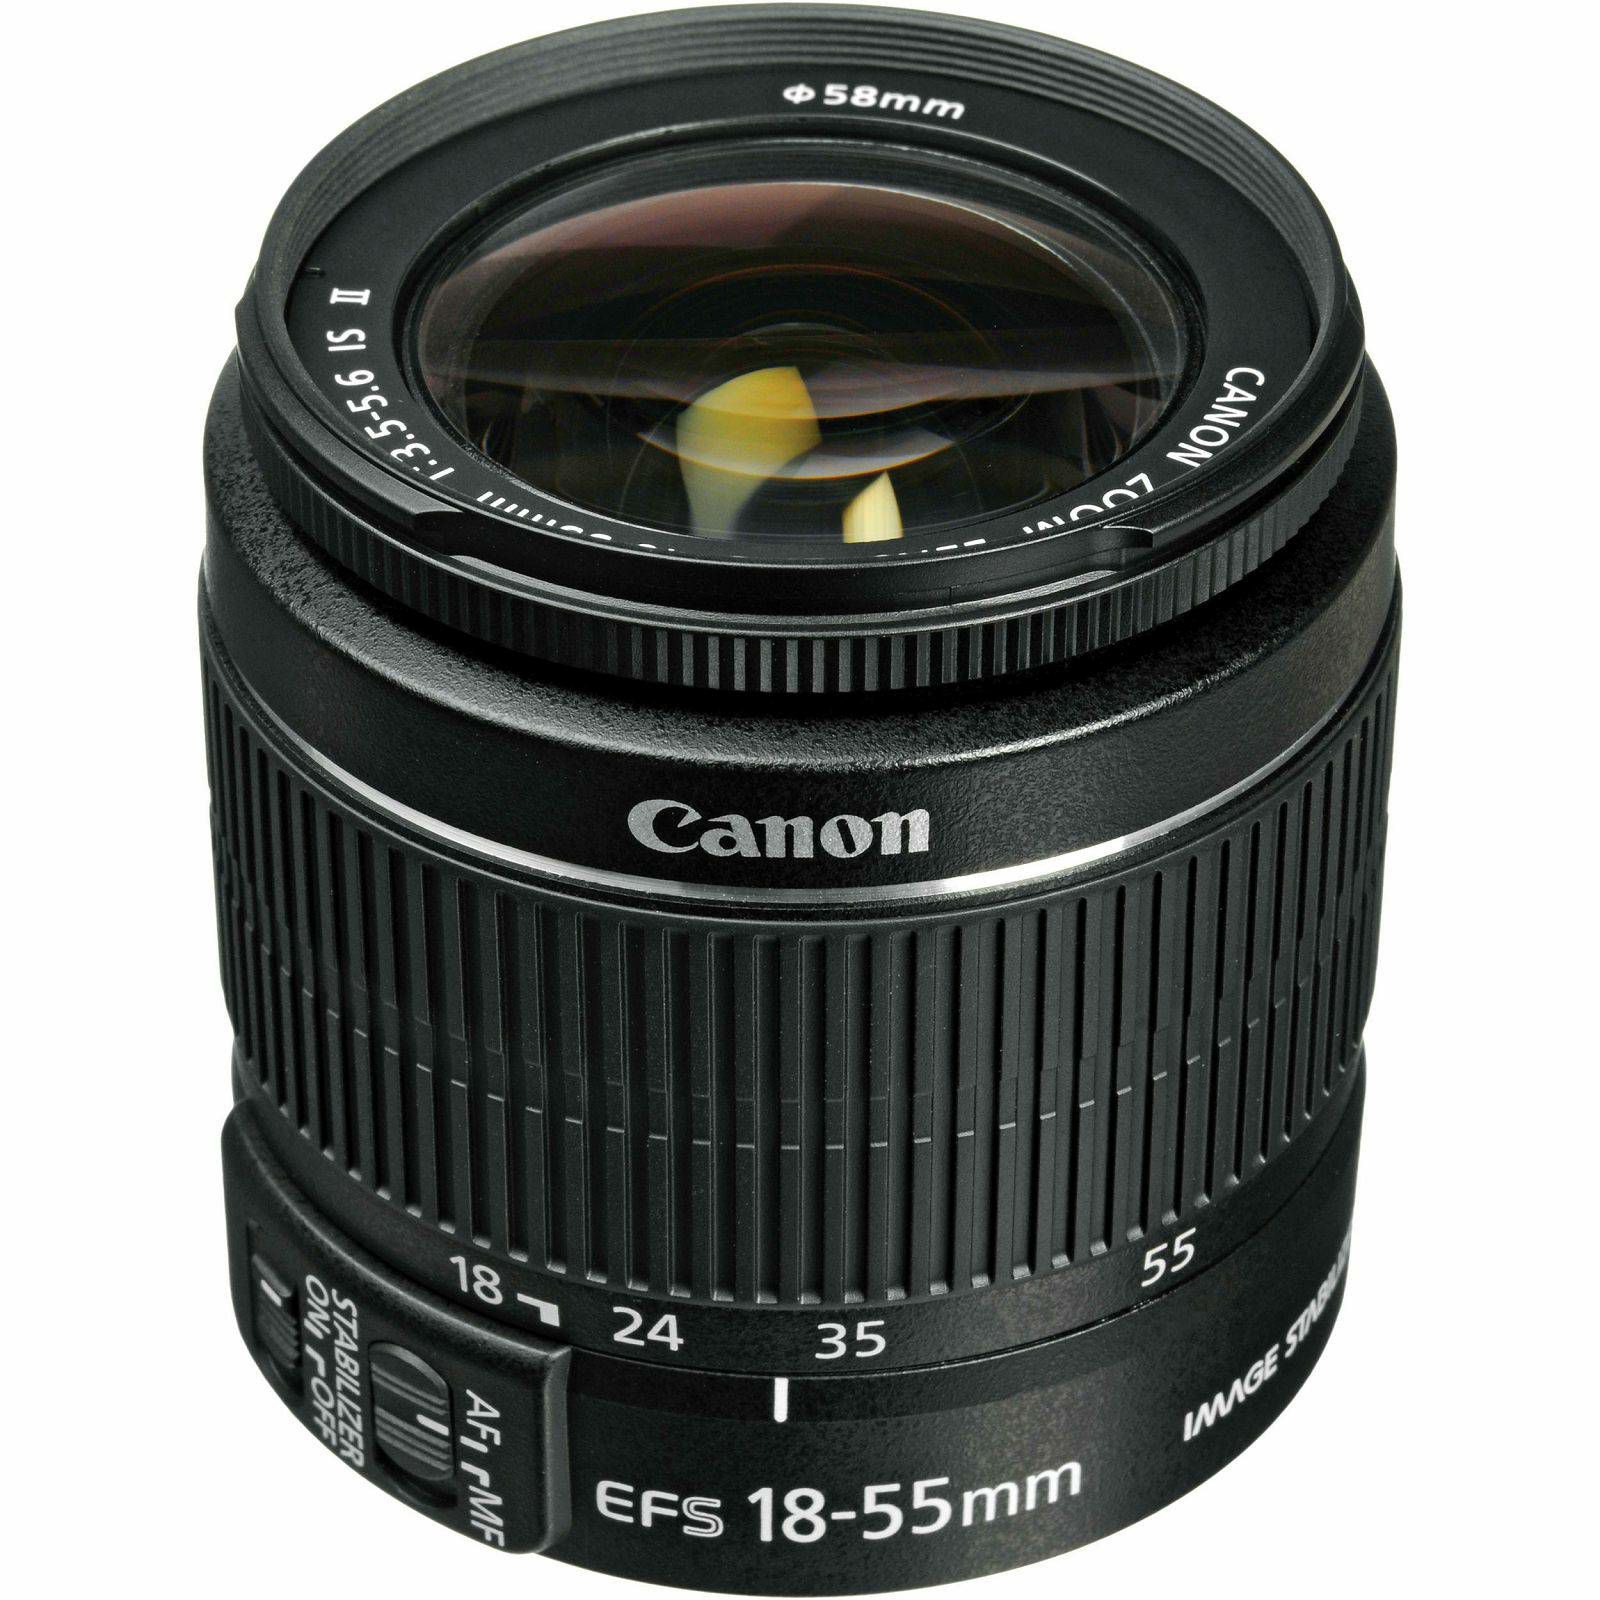 Canon EOS 2000D + 18-55 IS + 50mm f/1.8 STM DSLR Digitalni fotoaparat s objektivom EF-S 18-55mm f/3.5-5.6 i 50 1.8 (2728C030AA)